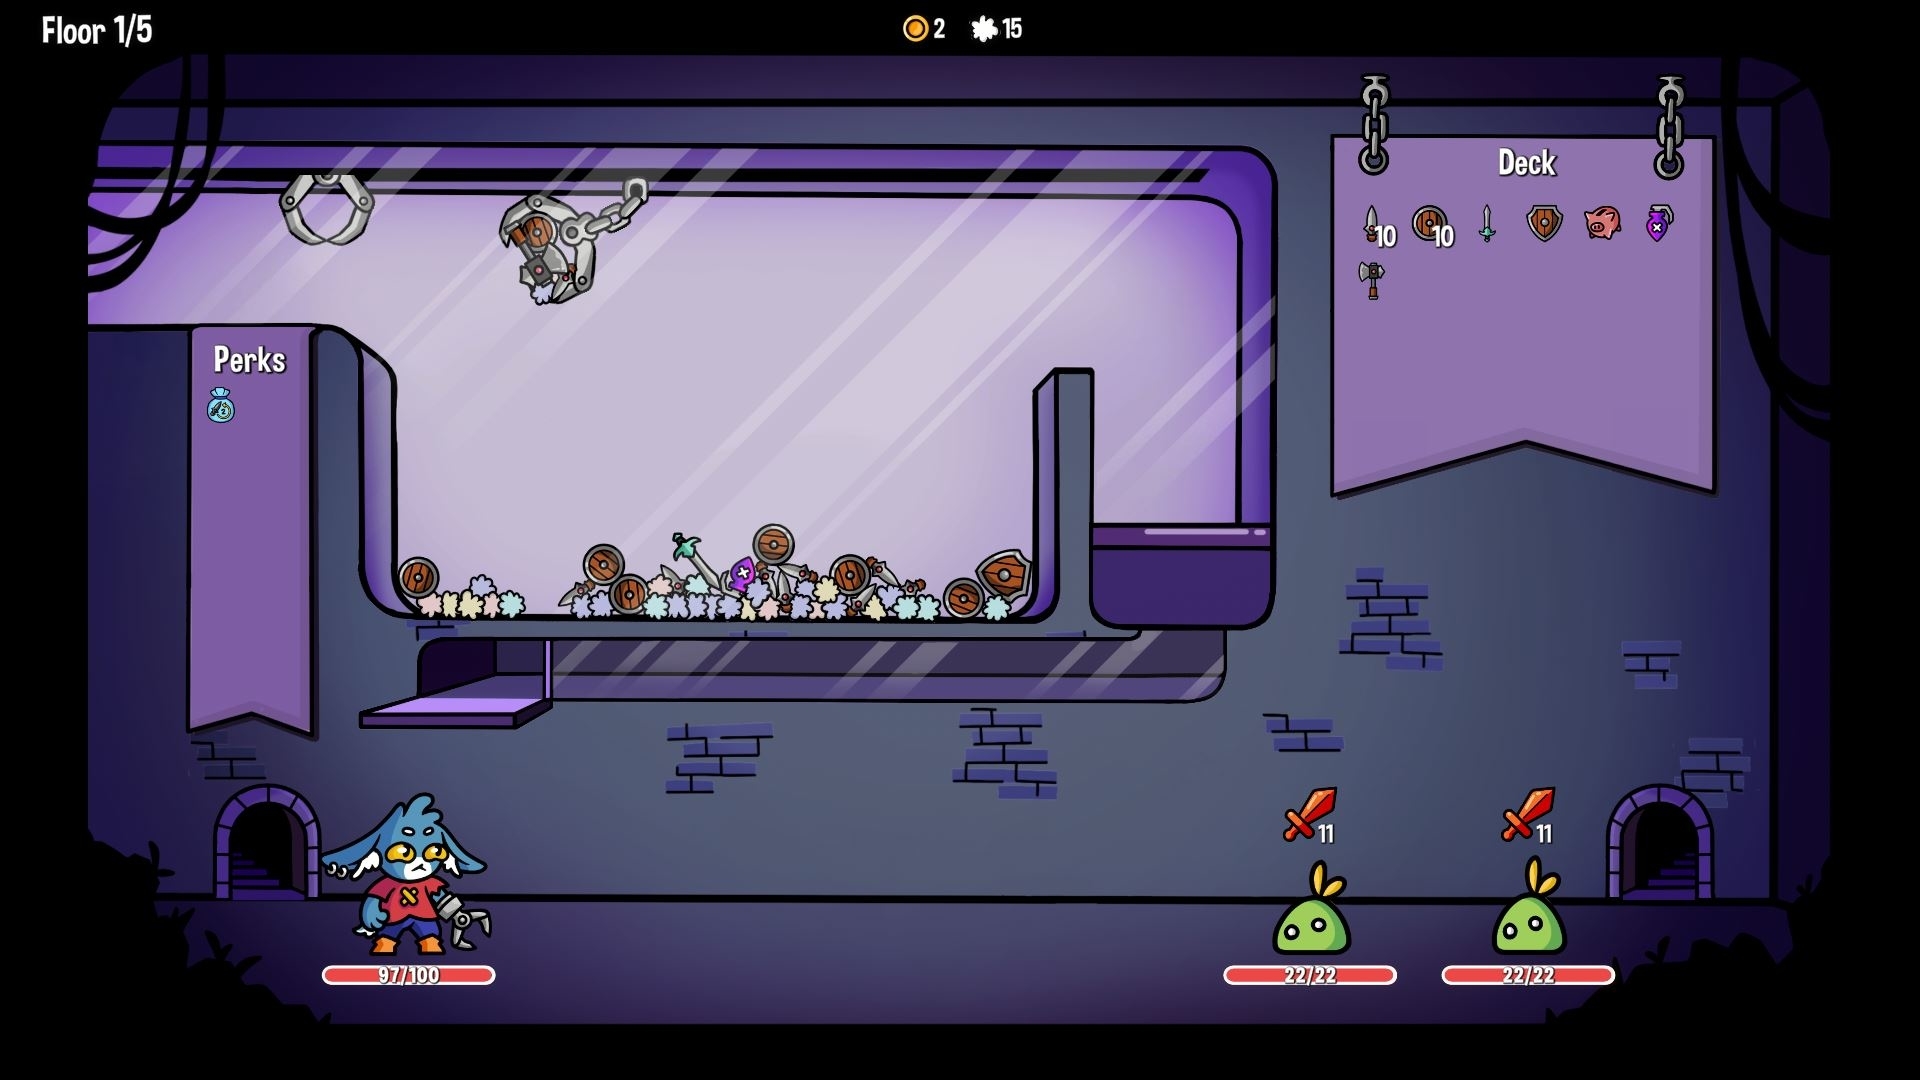 ゲームのスクリーンショット、キャラクターが敵を避けながらプラットフォームを進む様子。